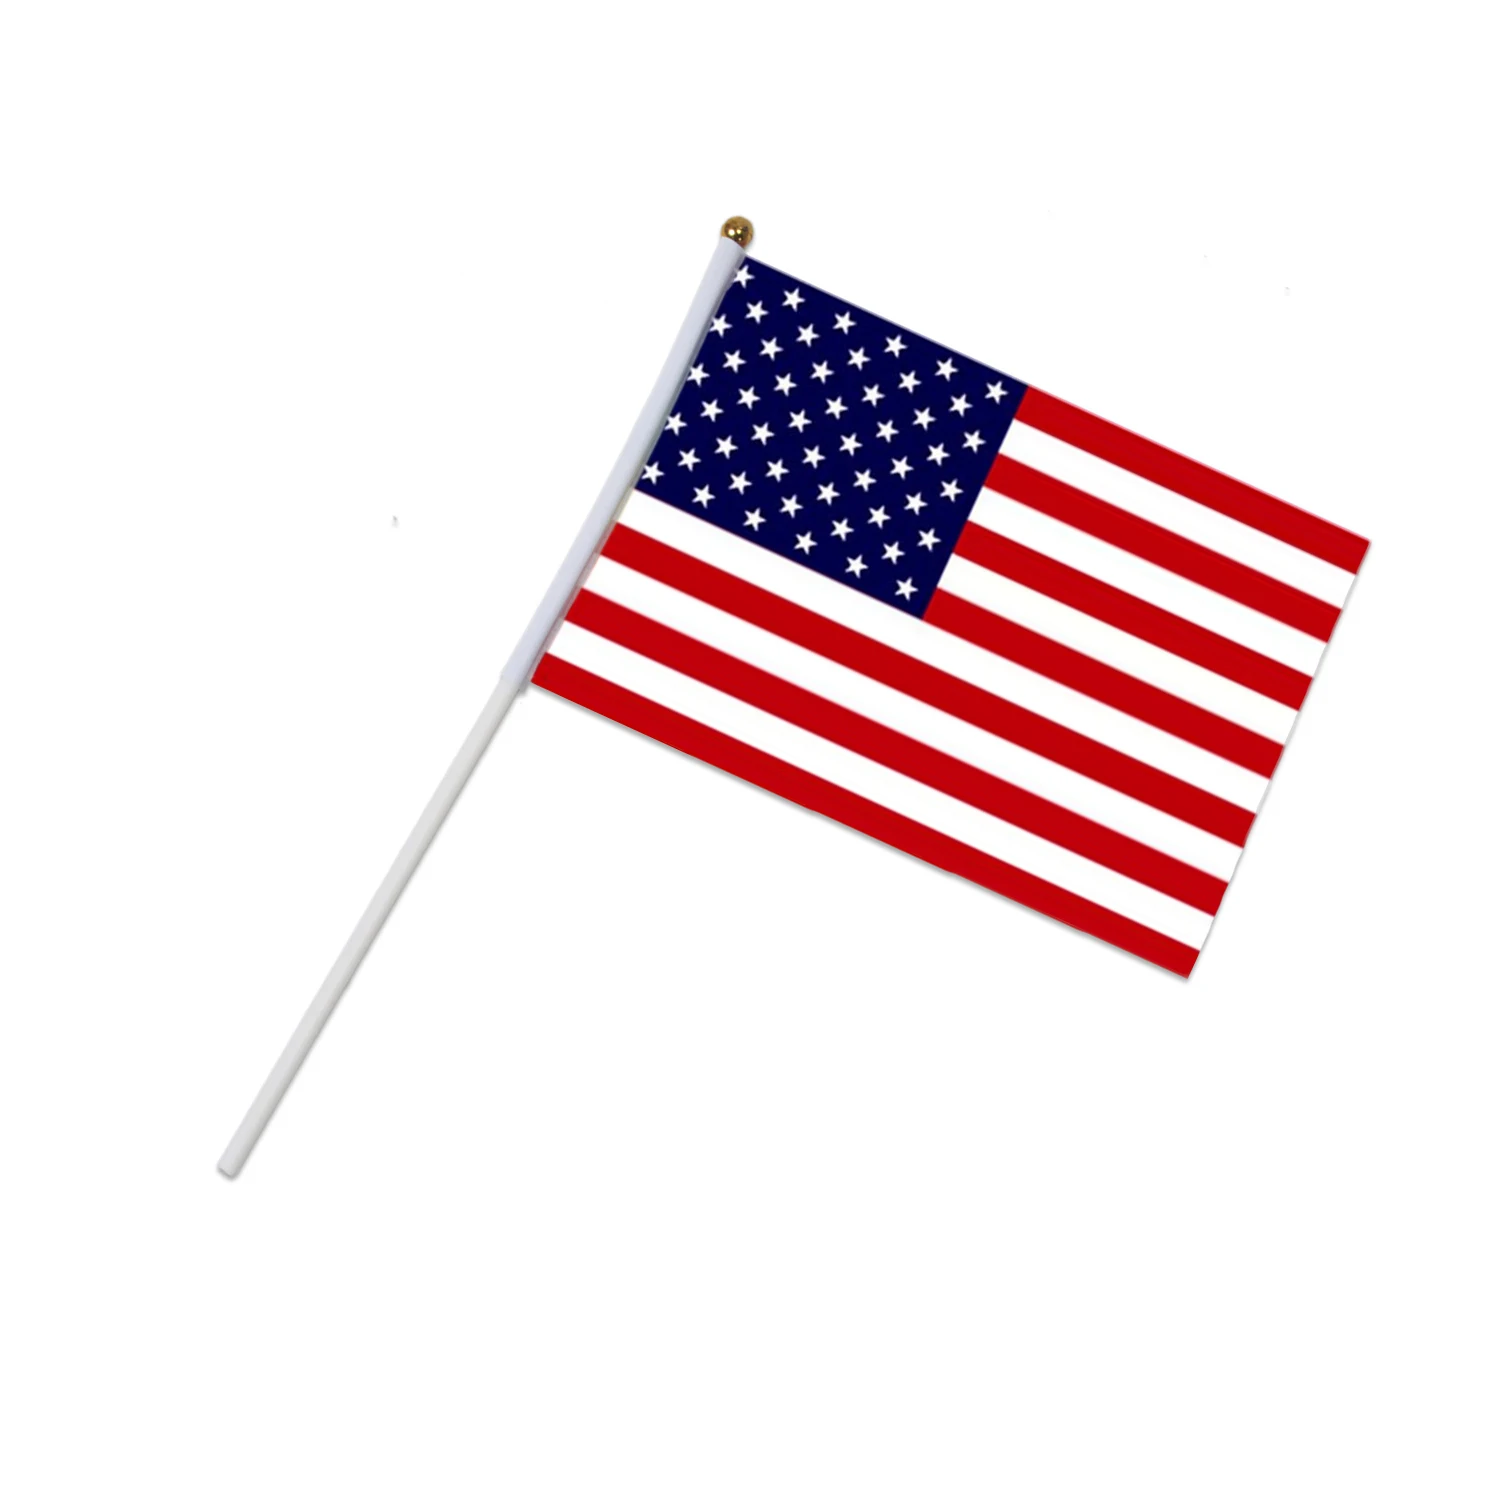 12 предметов в лоте, Dazon 14*21 см страна маленький Национальный флаг развивающиеся ручные флажки с пластиковые флагштоки для занятий спортом парад Декор Футбол - Цвет: USA